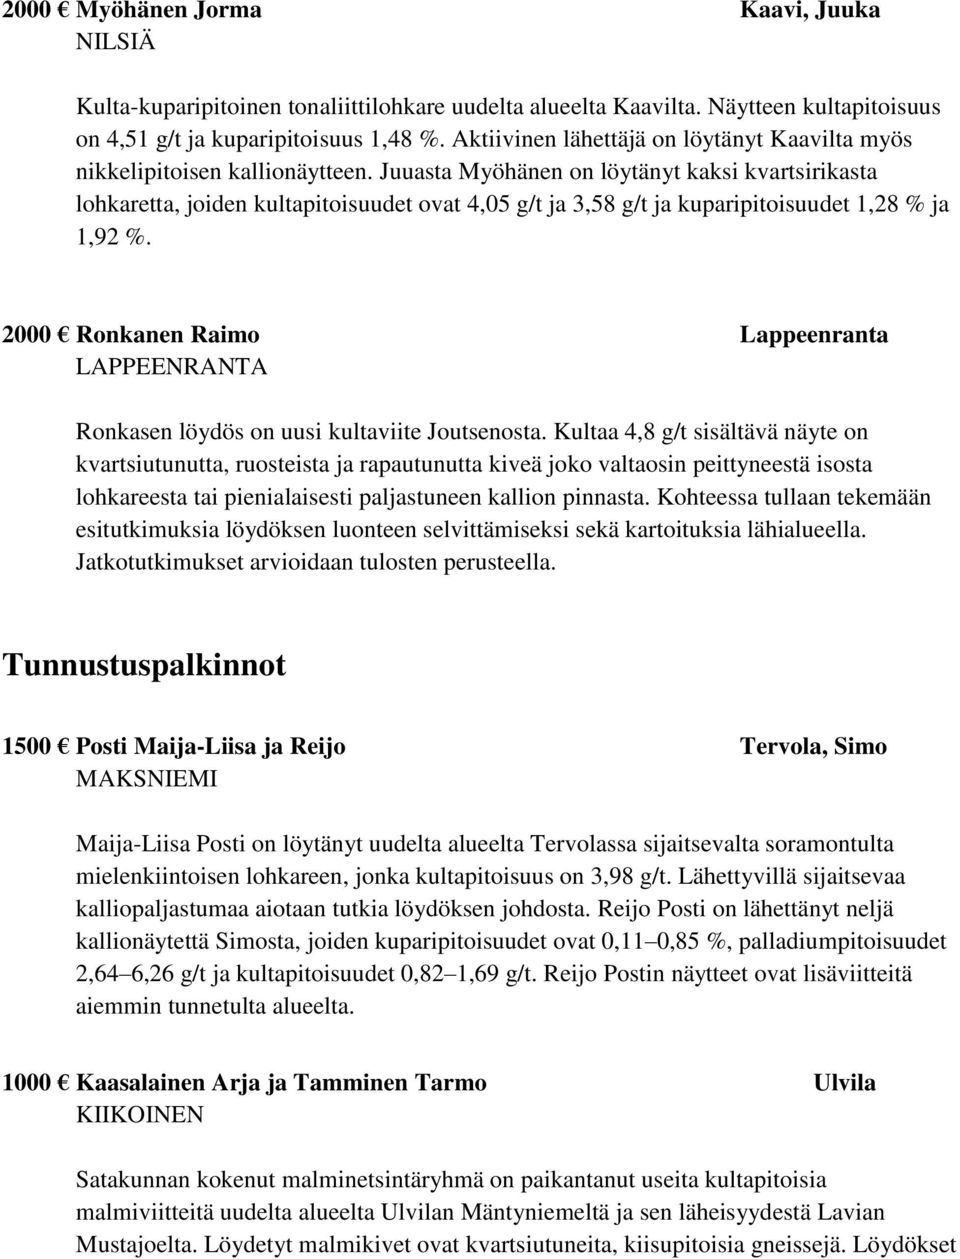 Juuasta Myöhänen on löytänyt kaksi kvartsirikasta lohkaretta, joiden kultapitoisuudet ovat 4,05 g/t ja 3,58 g/t ja kuparipitoisuudet 1,28 % ja 1,92 %.